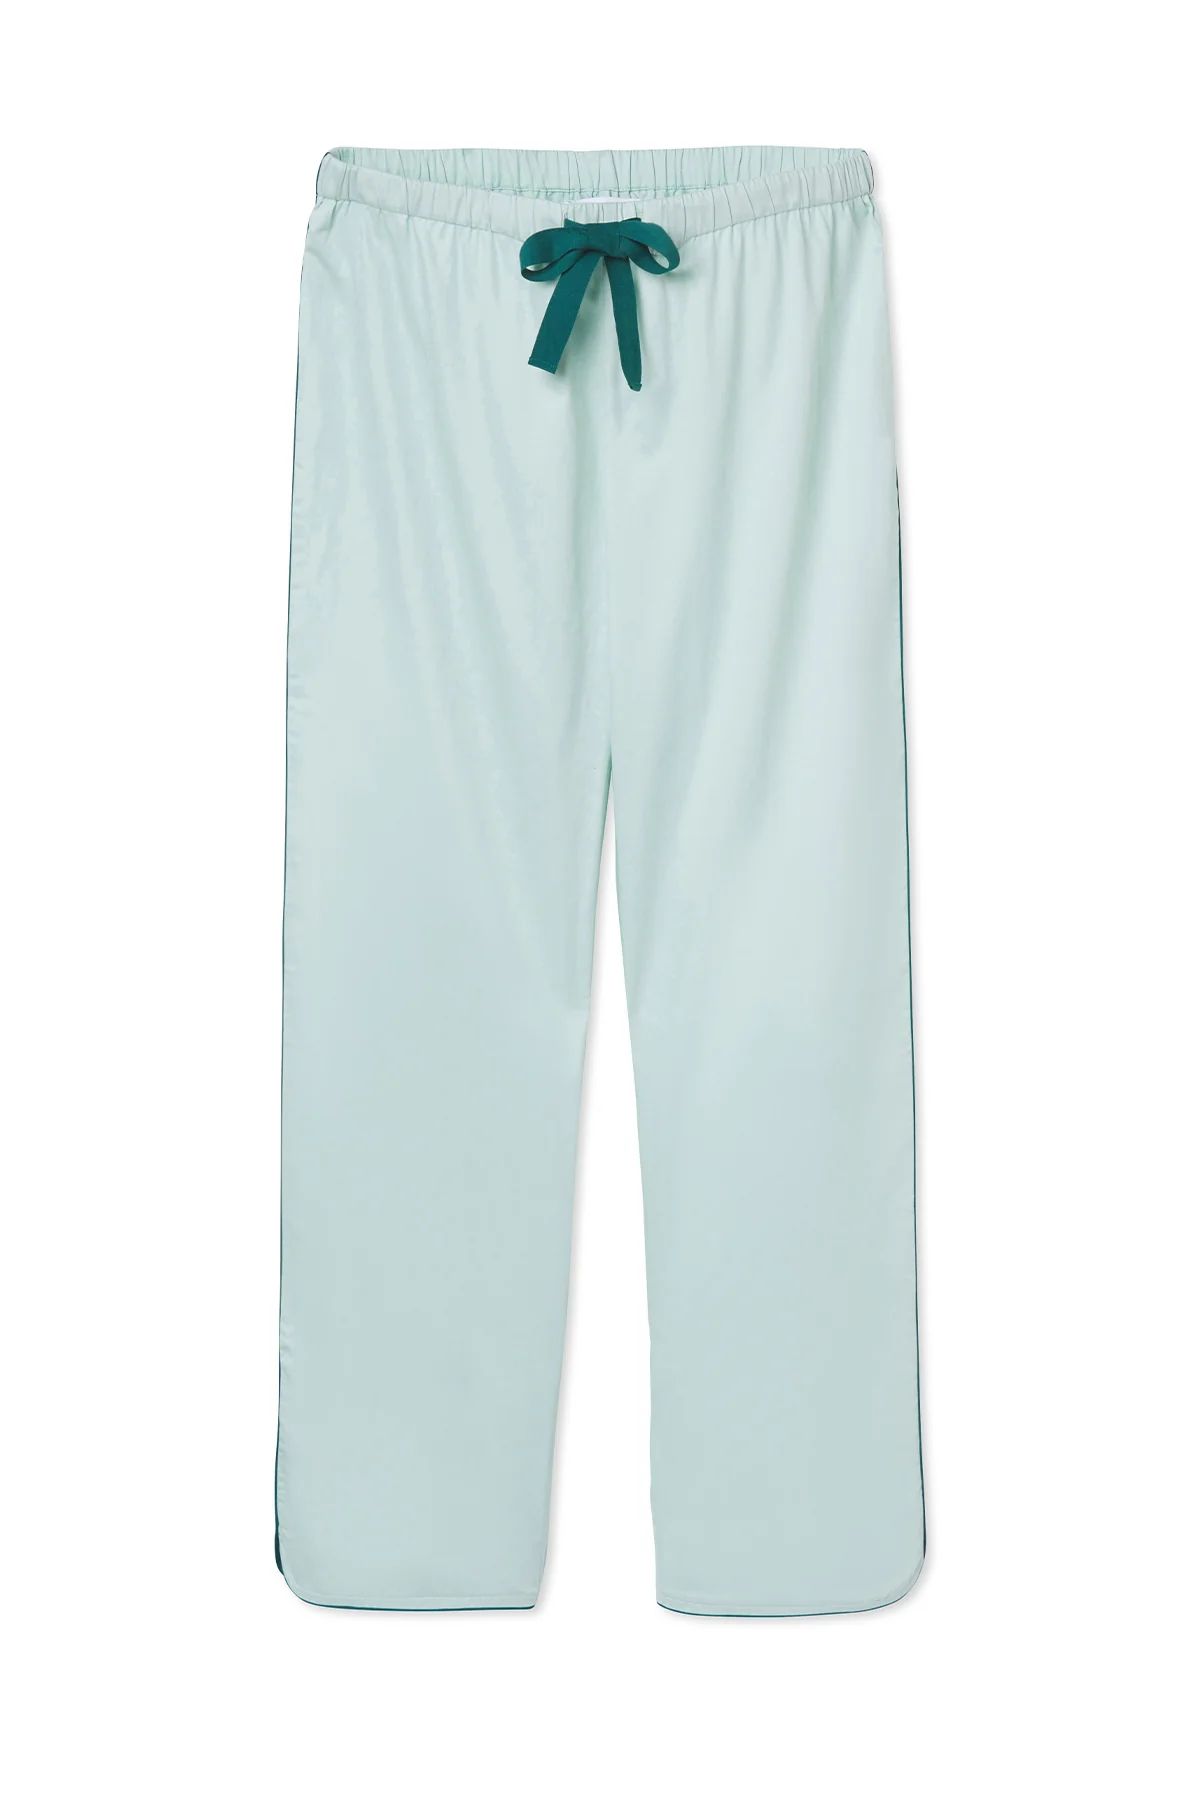 Poplin Pajama Pants in Spruce | LAKE Pajamas